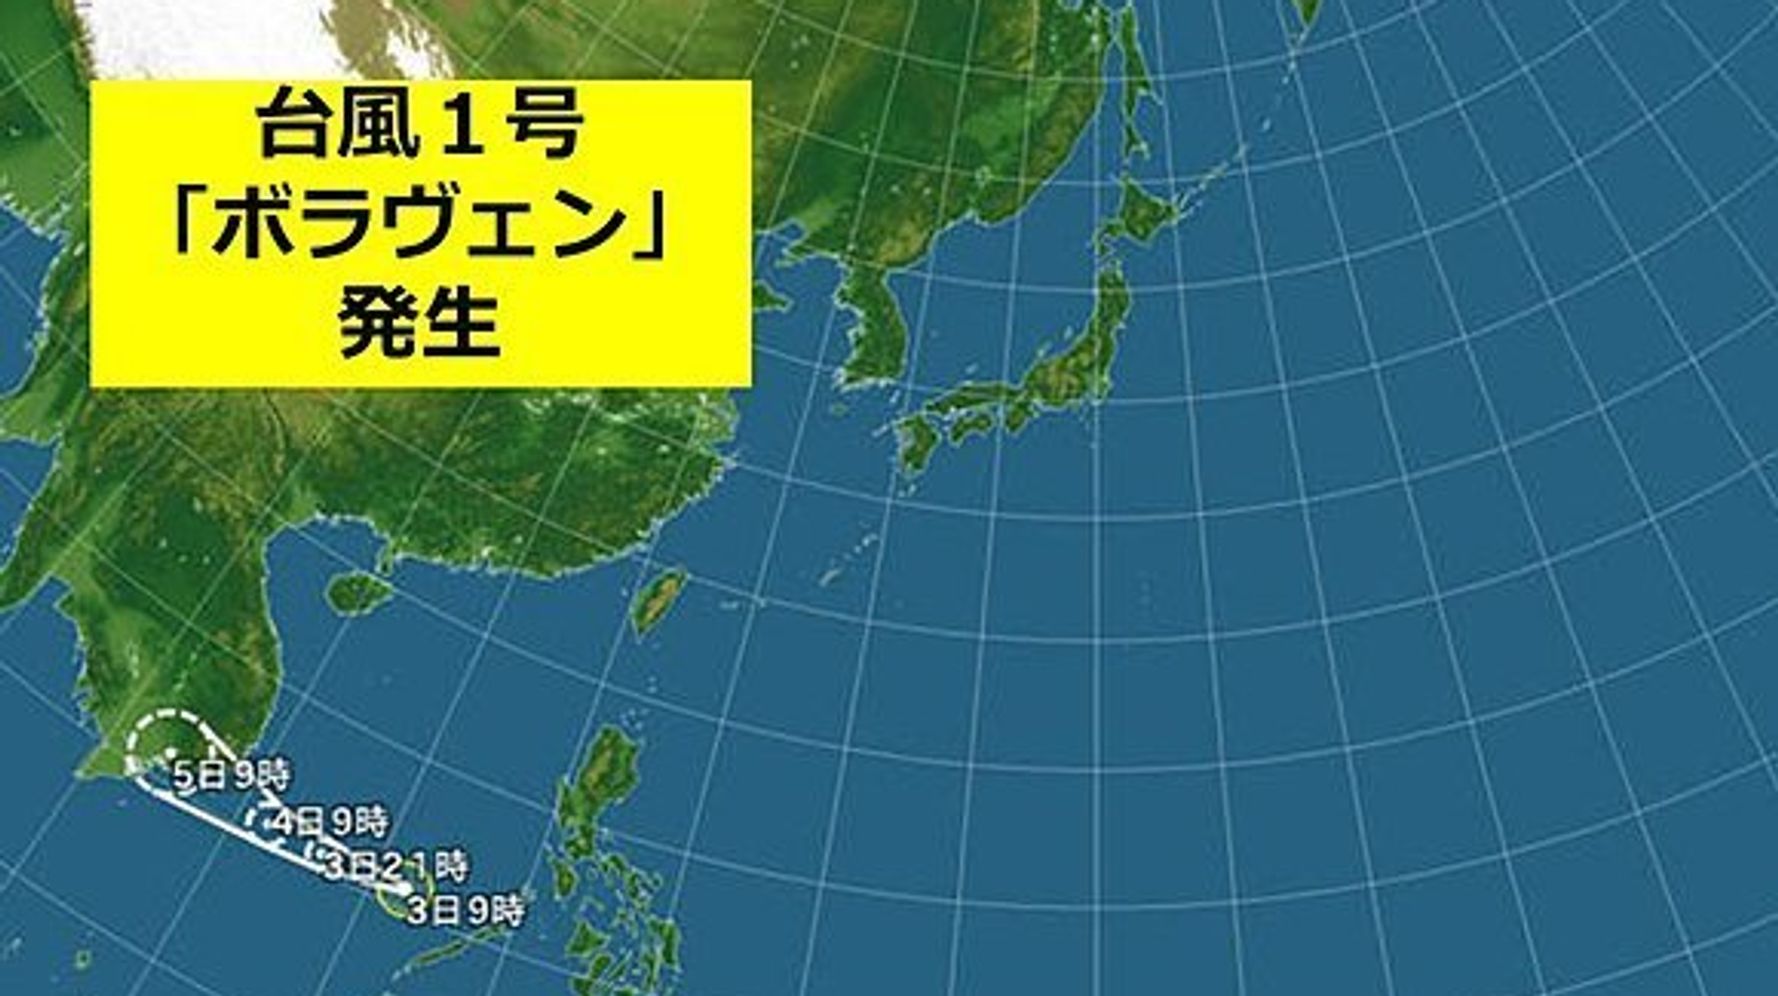 台風 1 号